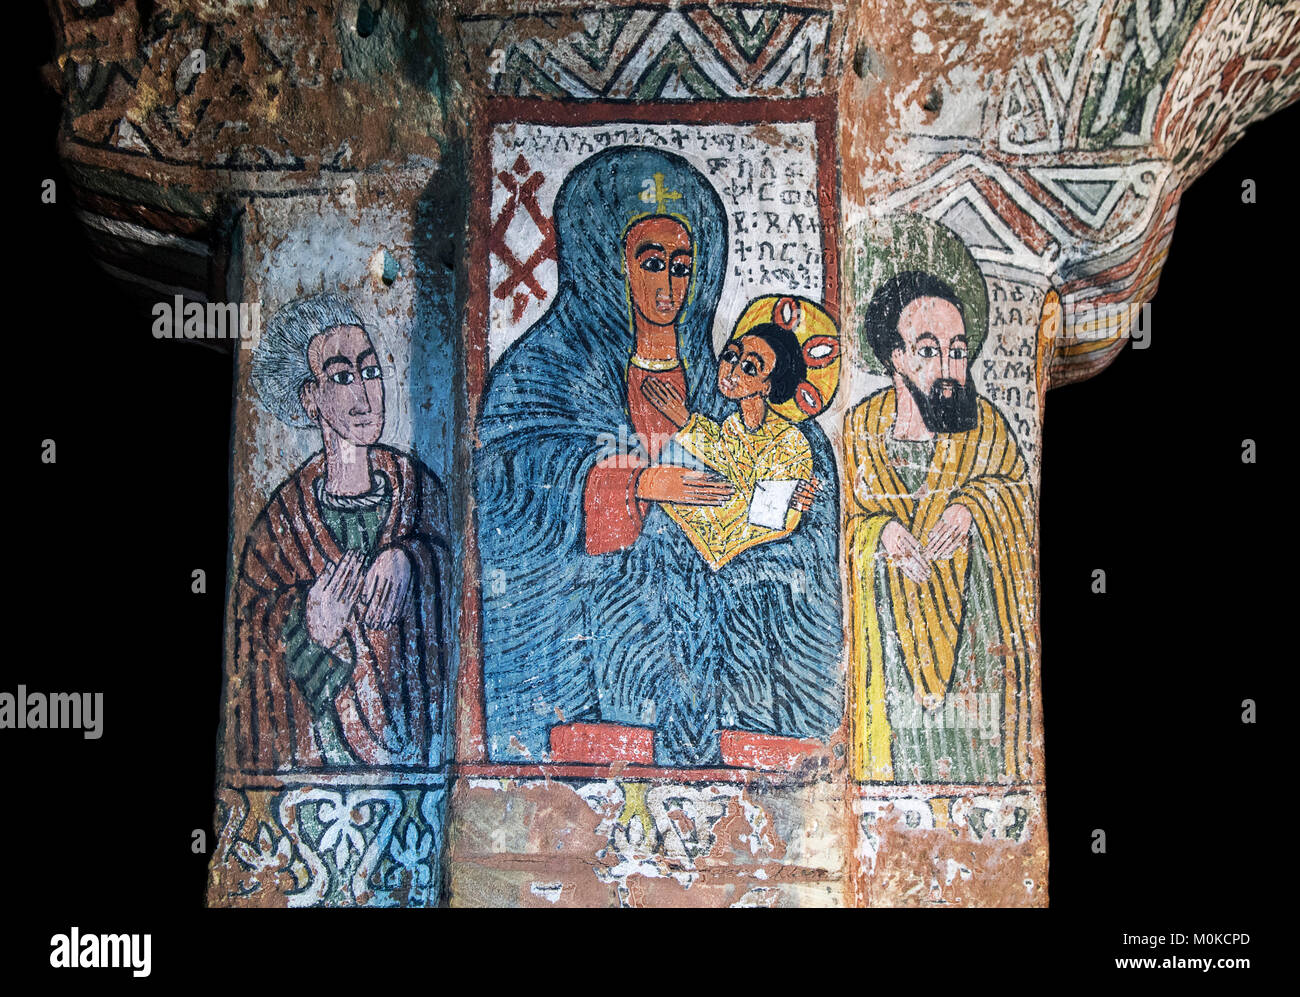 La Sainte Vierge à l'enfant entre Abouna Esi (droite) et une personne inconnue (à gauche), fresque dans l'église rupestres orthodoxe Abuna Yemata,Tigré, Ethiopie Banque D'Images